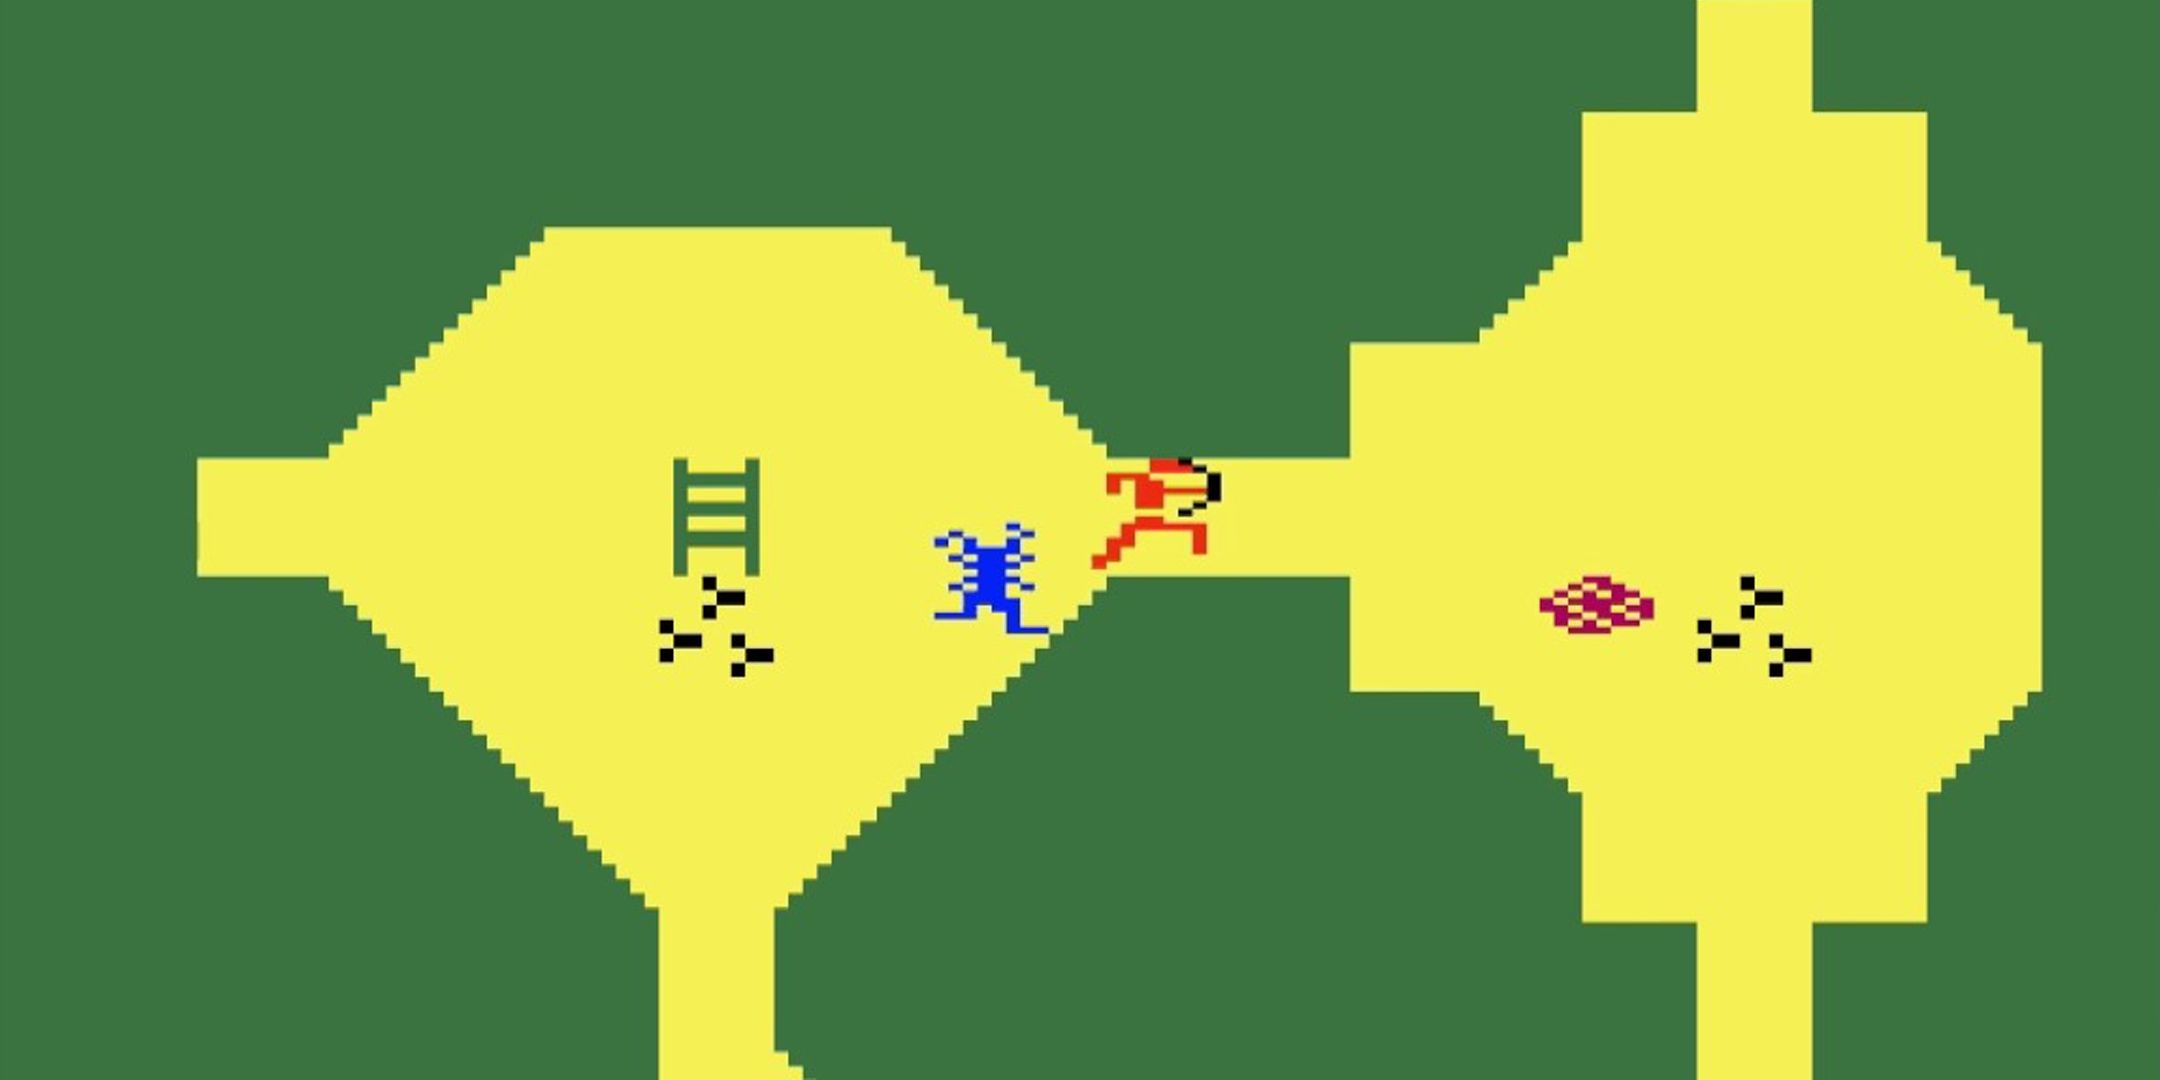 Благодаря последним новостям Atari может появиться больше видеоигр D&D